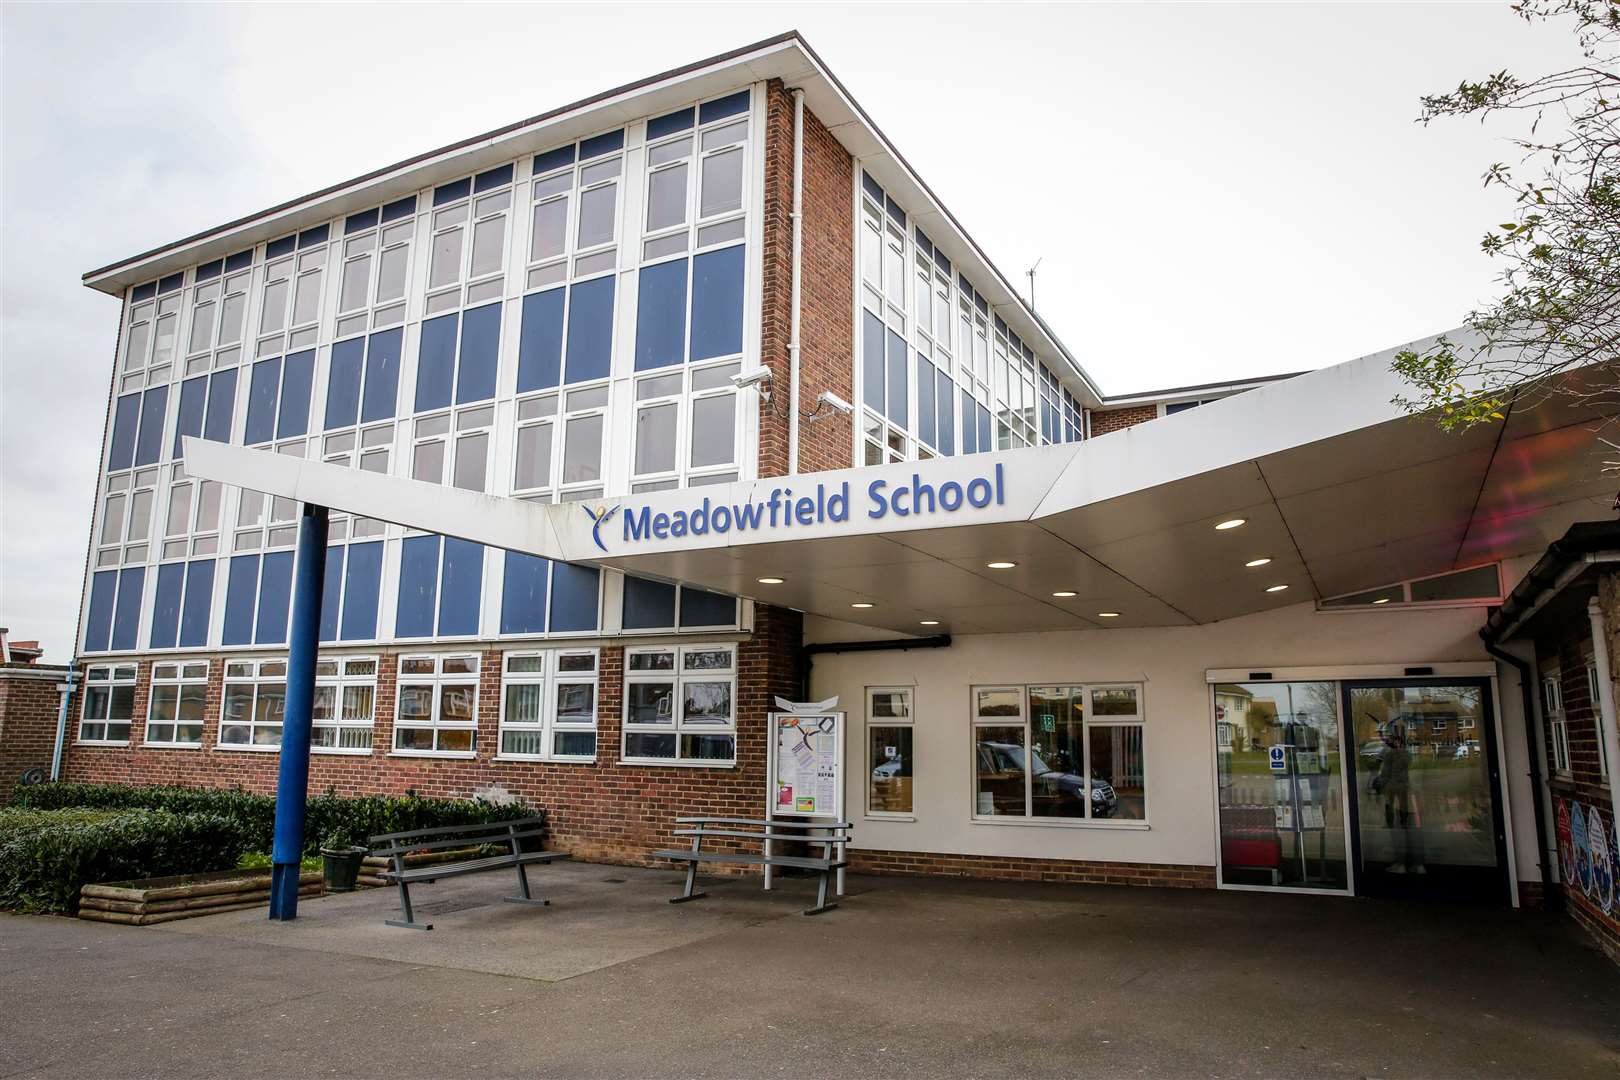 Meadowfield School in Swanstree Avenue, Sittingbourne, is closing until next year